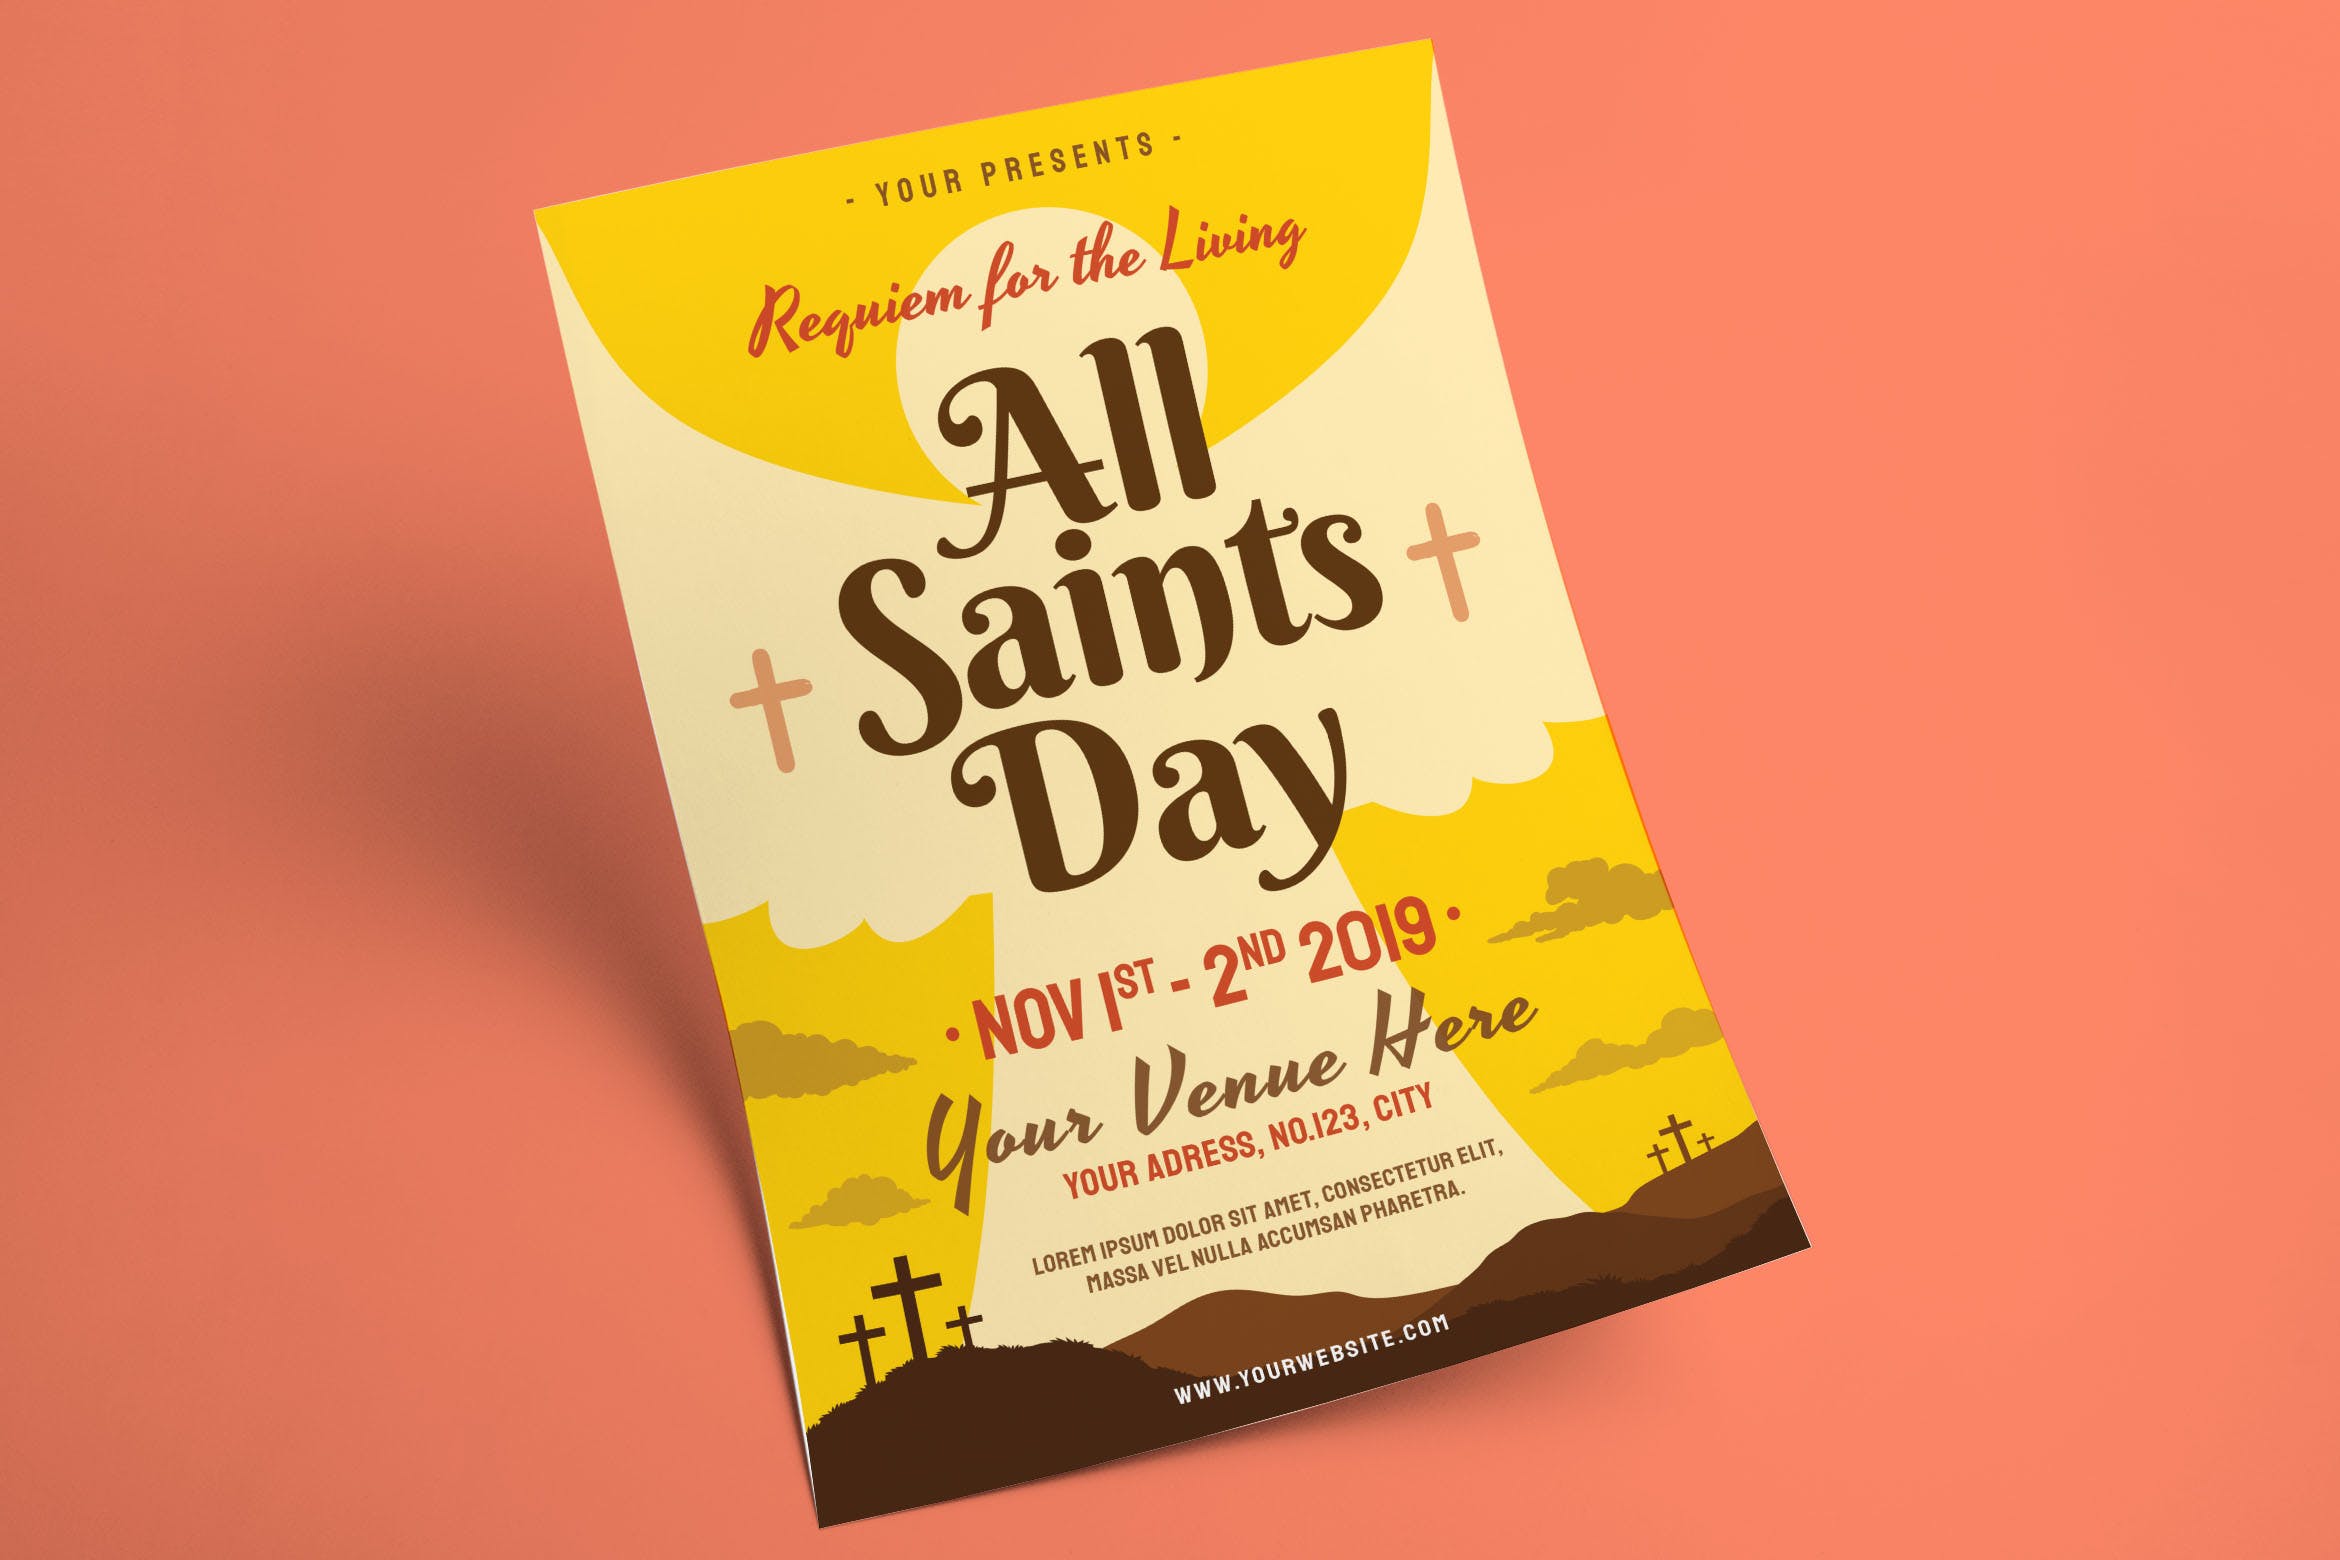 诸圣日活动传单海报PSD素材16图库精选模板 All Saints Day Flyer插图